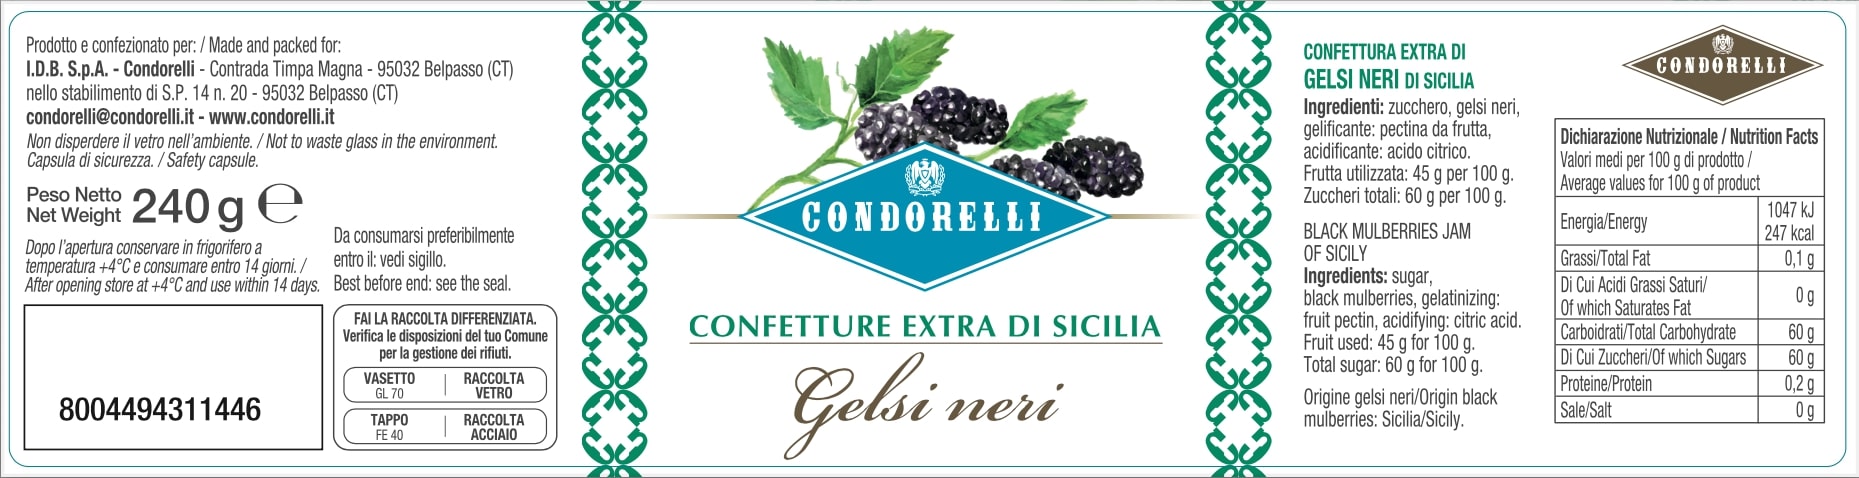 Confetture Extra di Sicilia - Gelsi neri